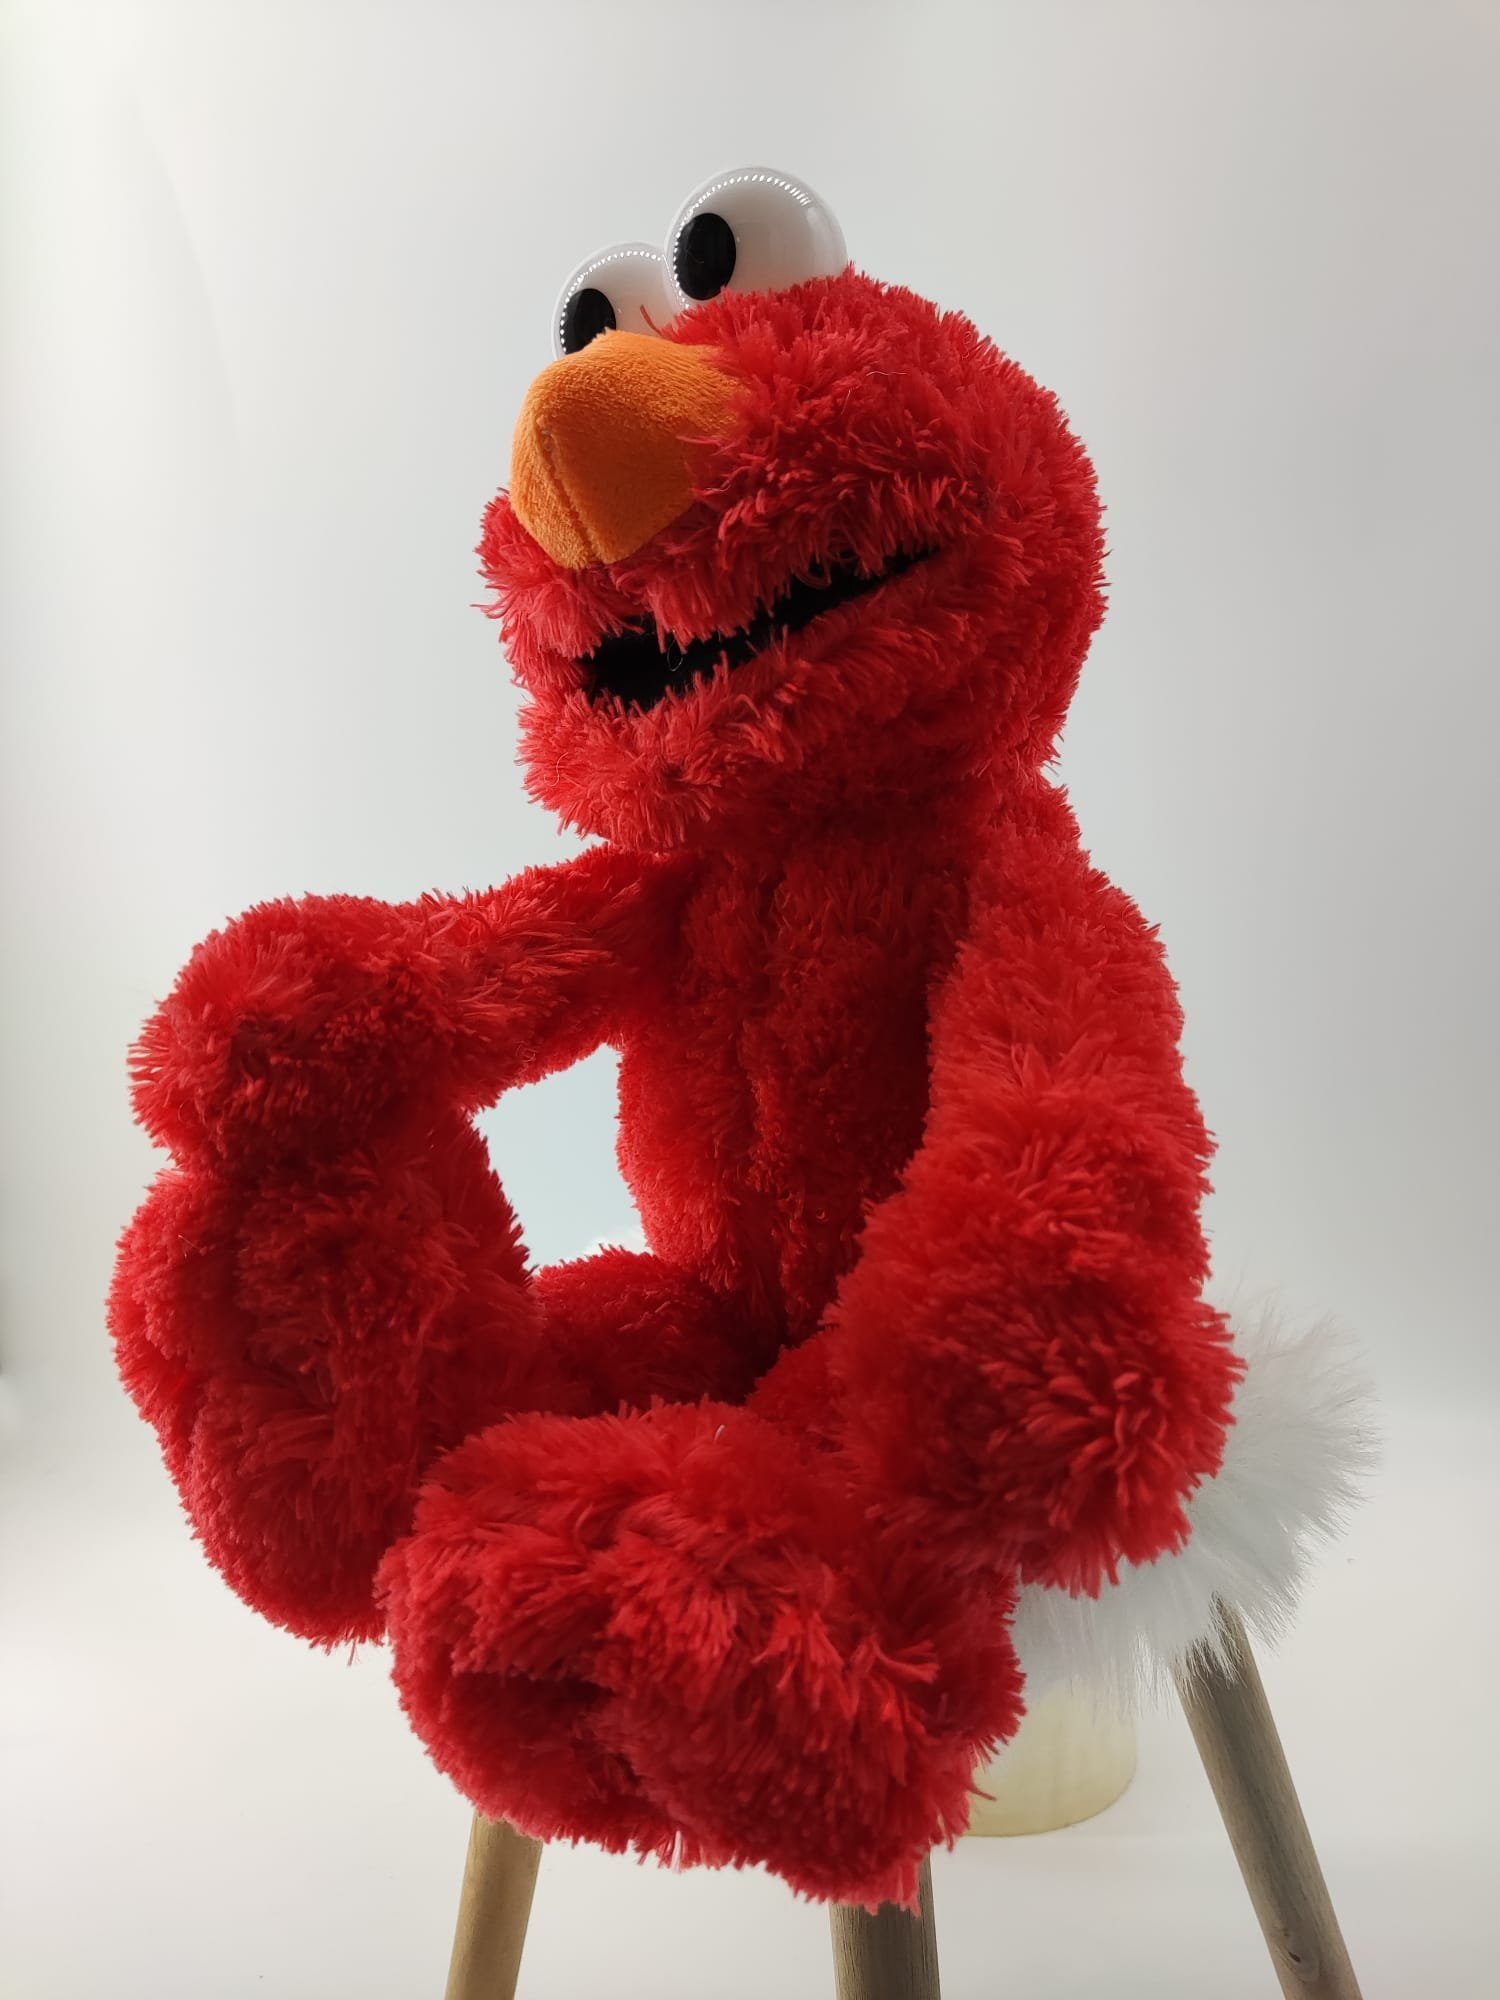 Sesamstrasse Kuscheltier Sesamstrasse Kuscheltier Elmo Kuscheltier Rot Plüsch Figur 35 cm (1-St), Super weicher Plüsch Stofftier Kuscheltier für Kinder zum spielen